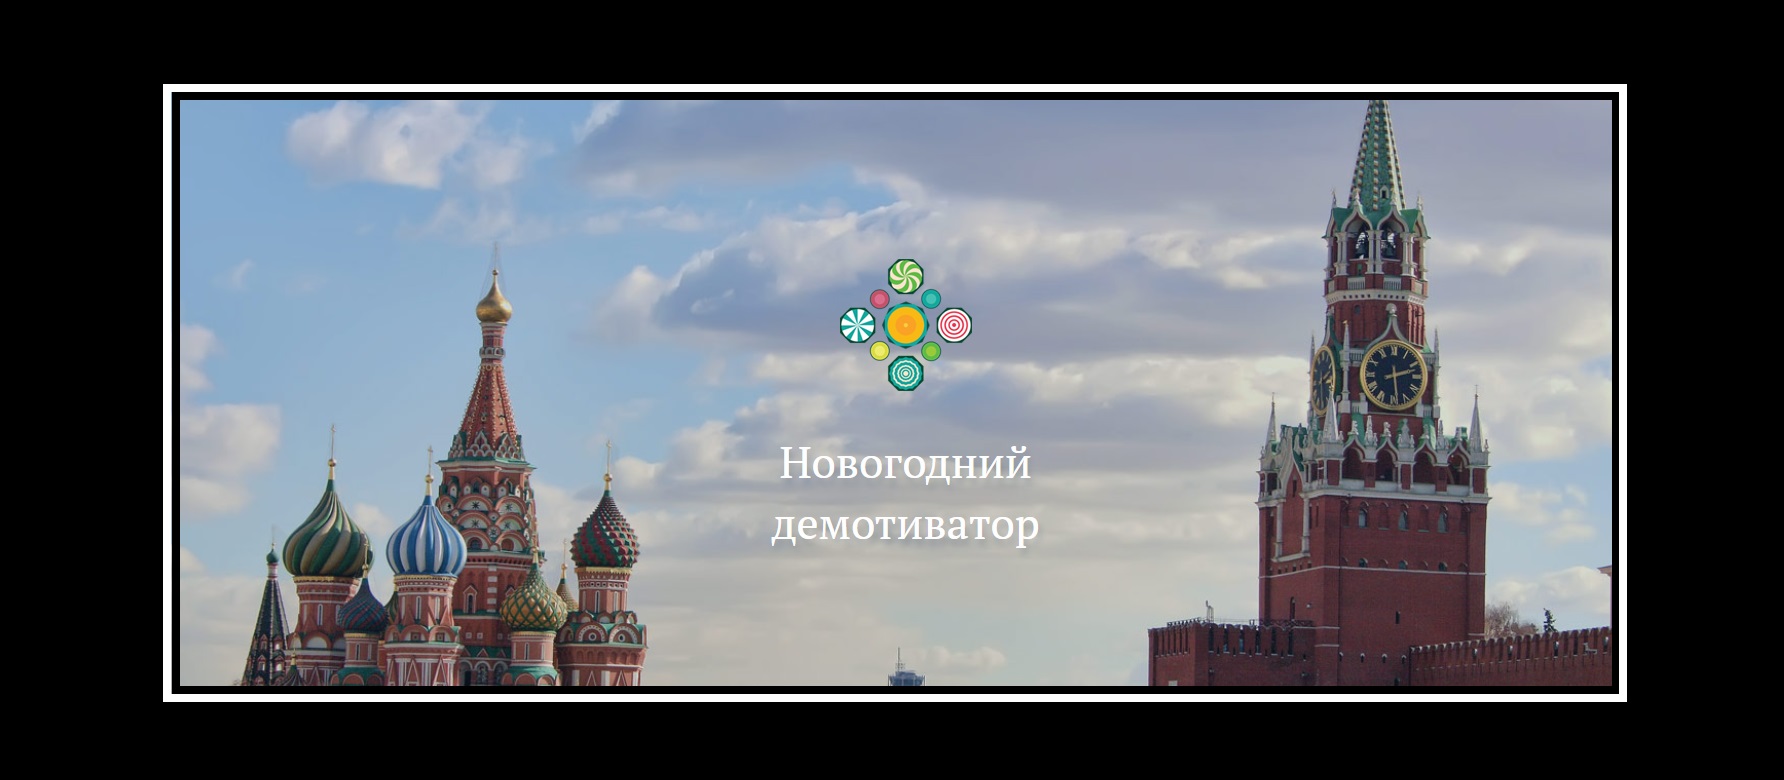 Первый шаг к Международным студенческим играм (МСИ)  «Квест – Москва» сделан: подведены итоги конкурса  студенческих демотиваторов.